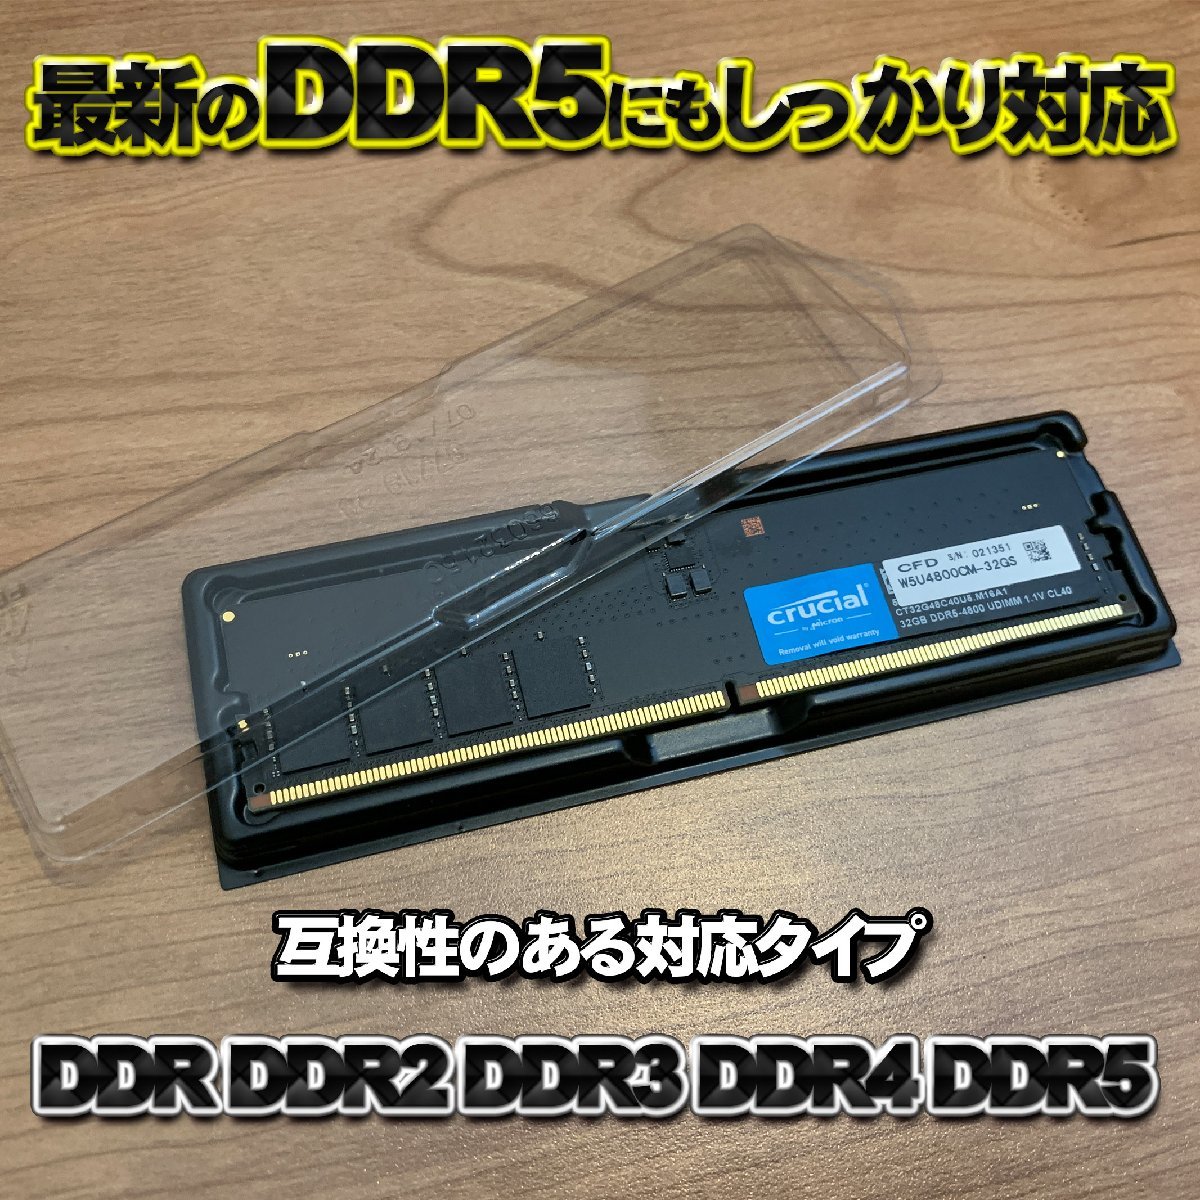 【 DDR4 対応 】蓋付き PC メモリー シェルケース DIMM 用 プラスチック 保管 収納ケース 5枚セット_画像2